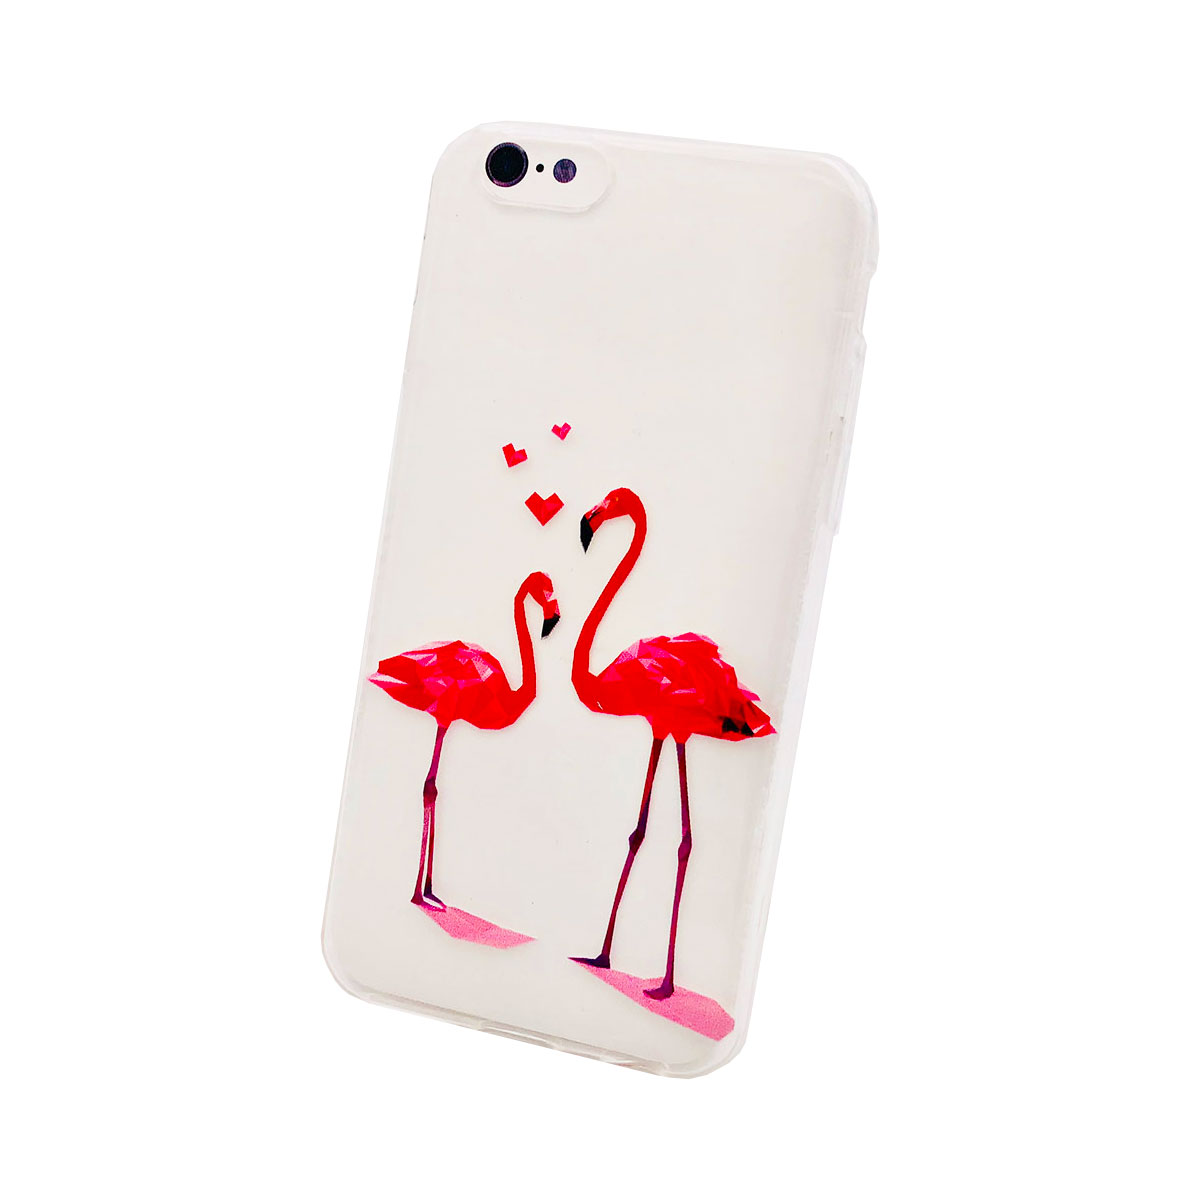 iphone 6 coque flamingo